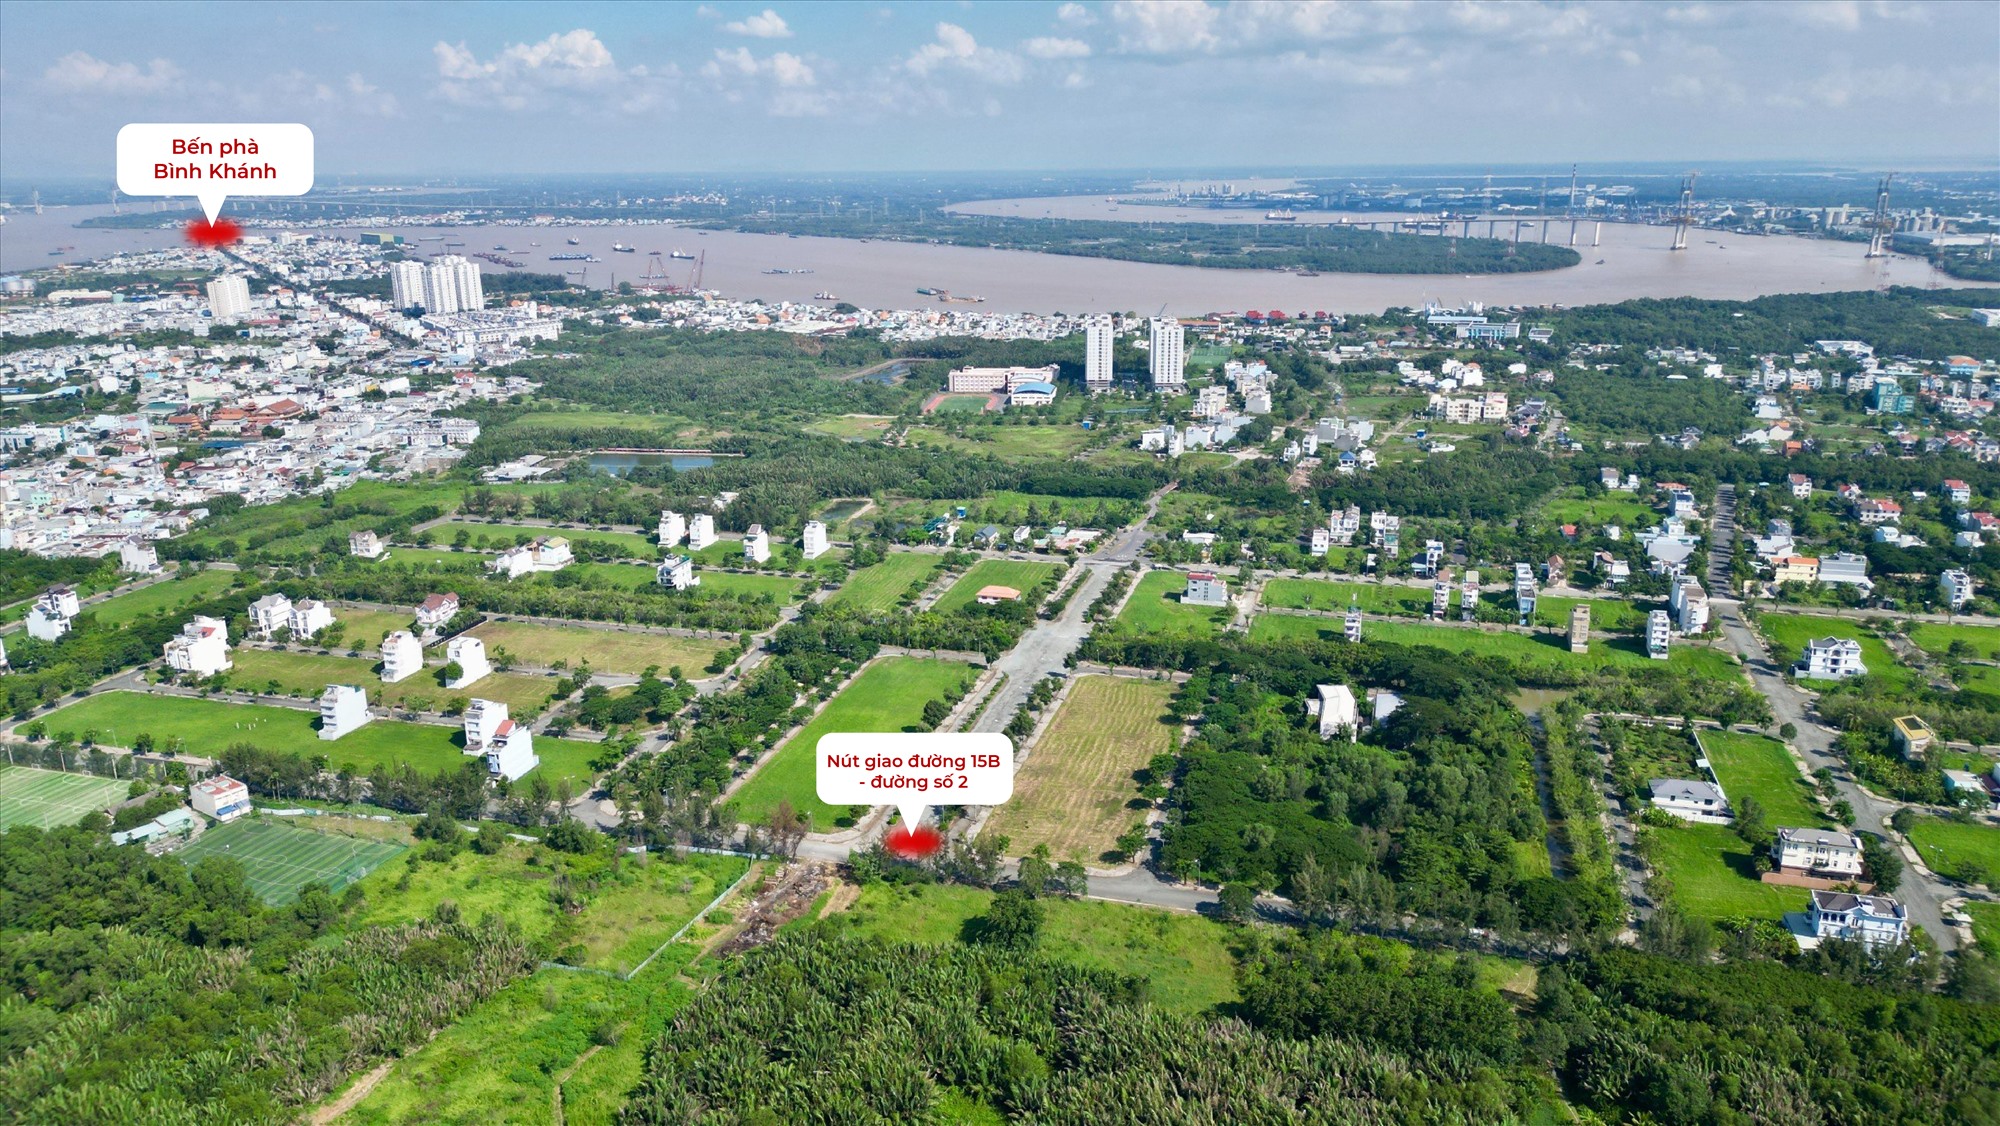 Cách bến phà Bình Khánh khoảng 1,8 km về phía Nam, điểm đầu của công trình tại nút giao đường 15B với đường số 2 (khu đô thị Phú Xuân, huyện Nhà Bè).